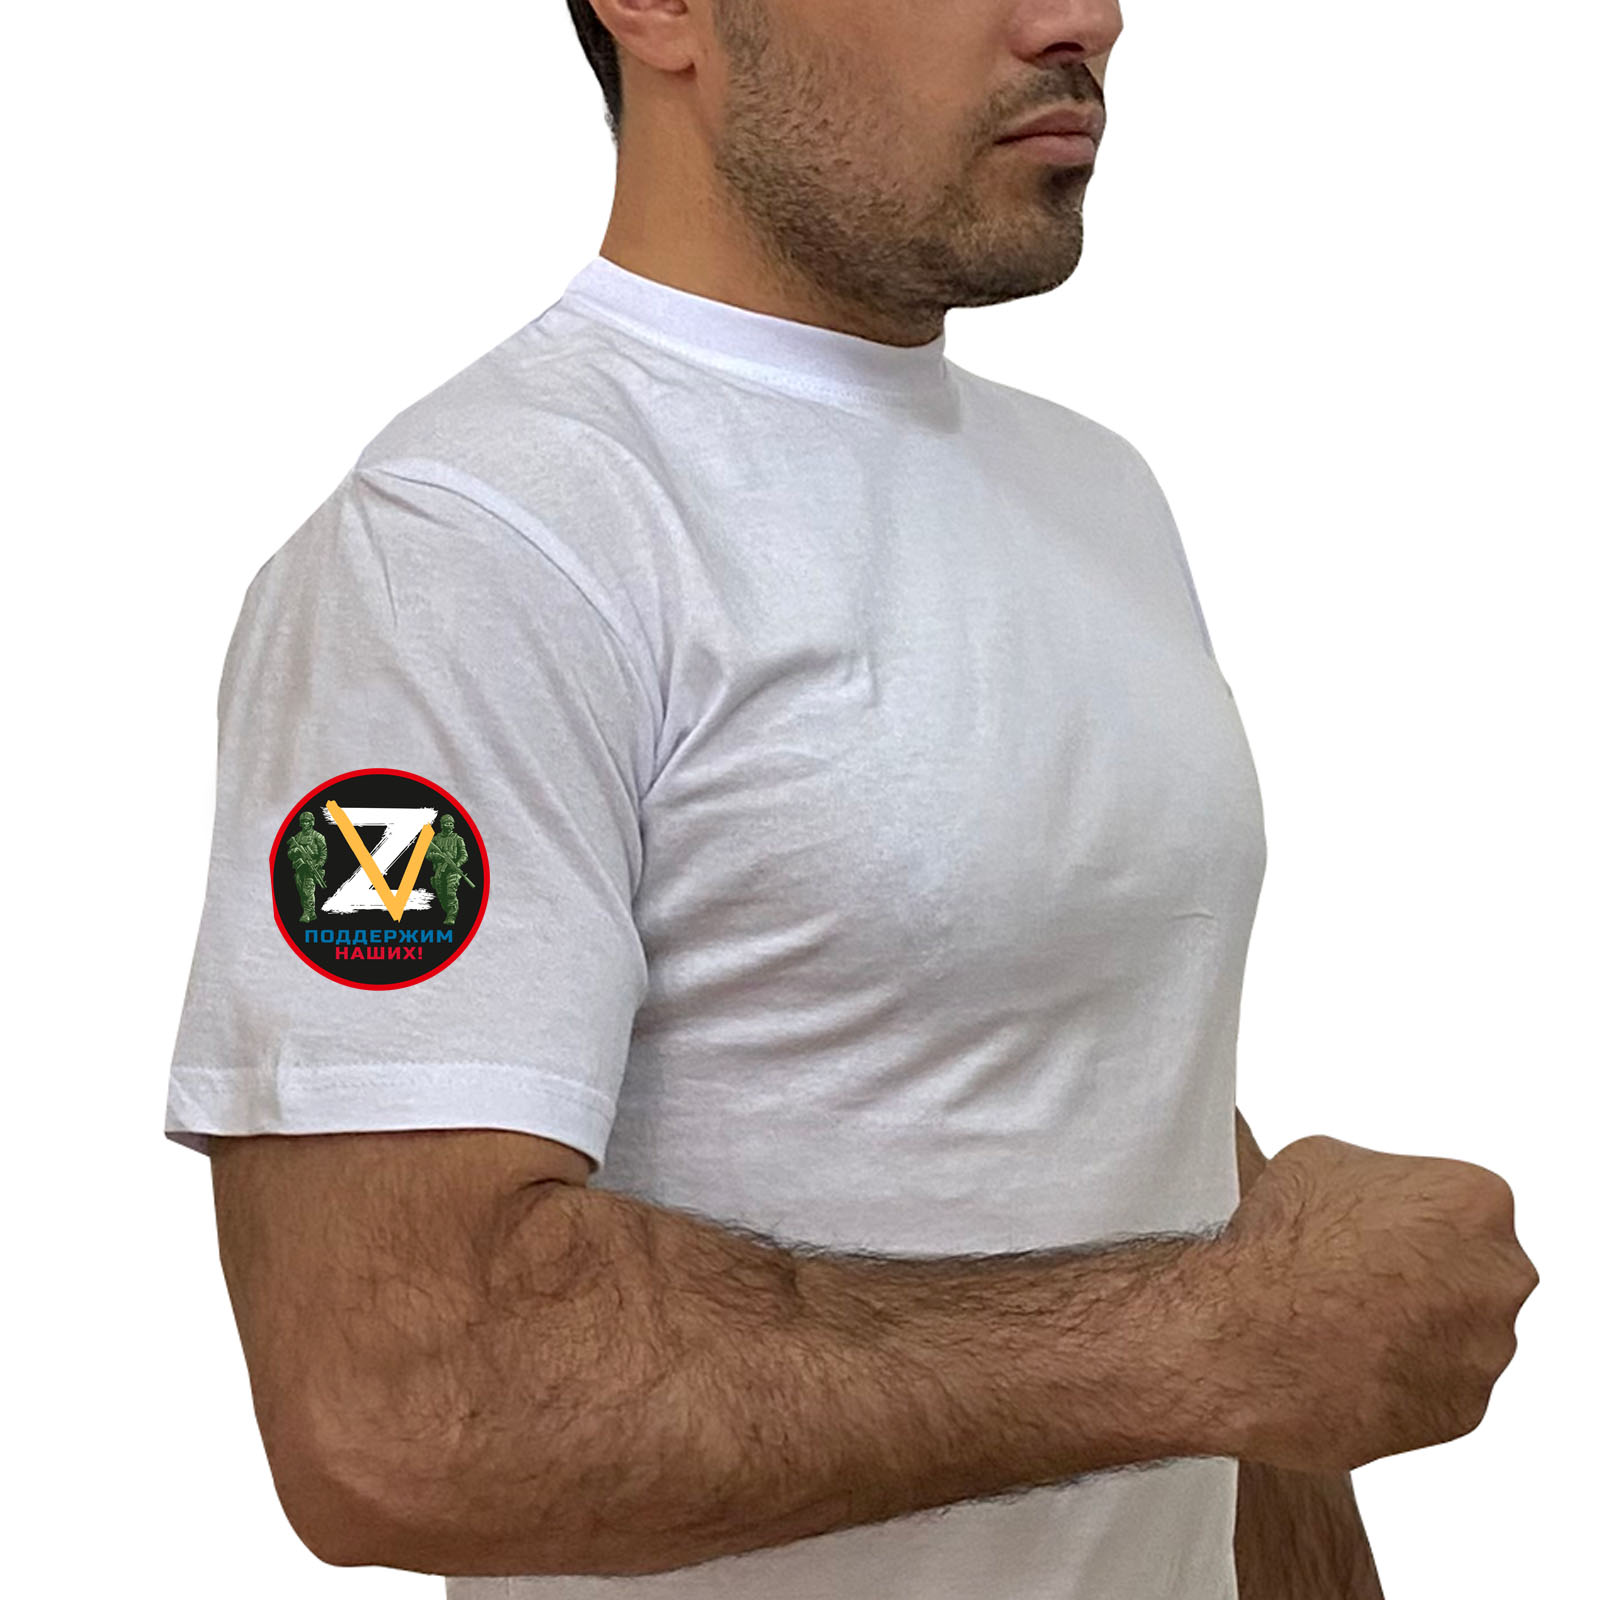 Купить белую футболку Z V с авторским трансфером на рукаве